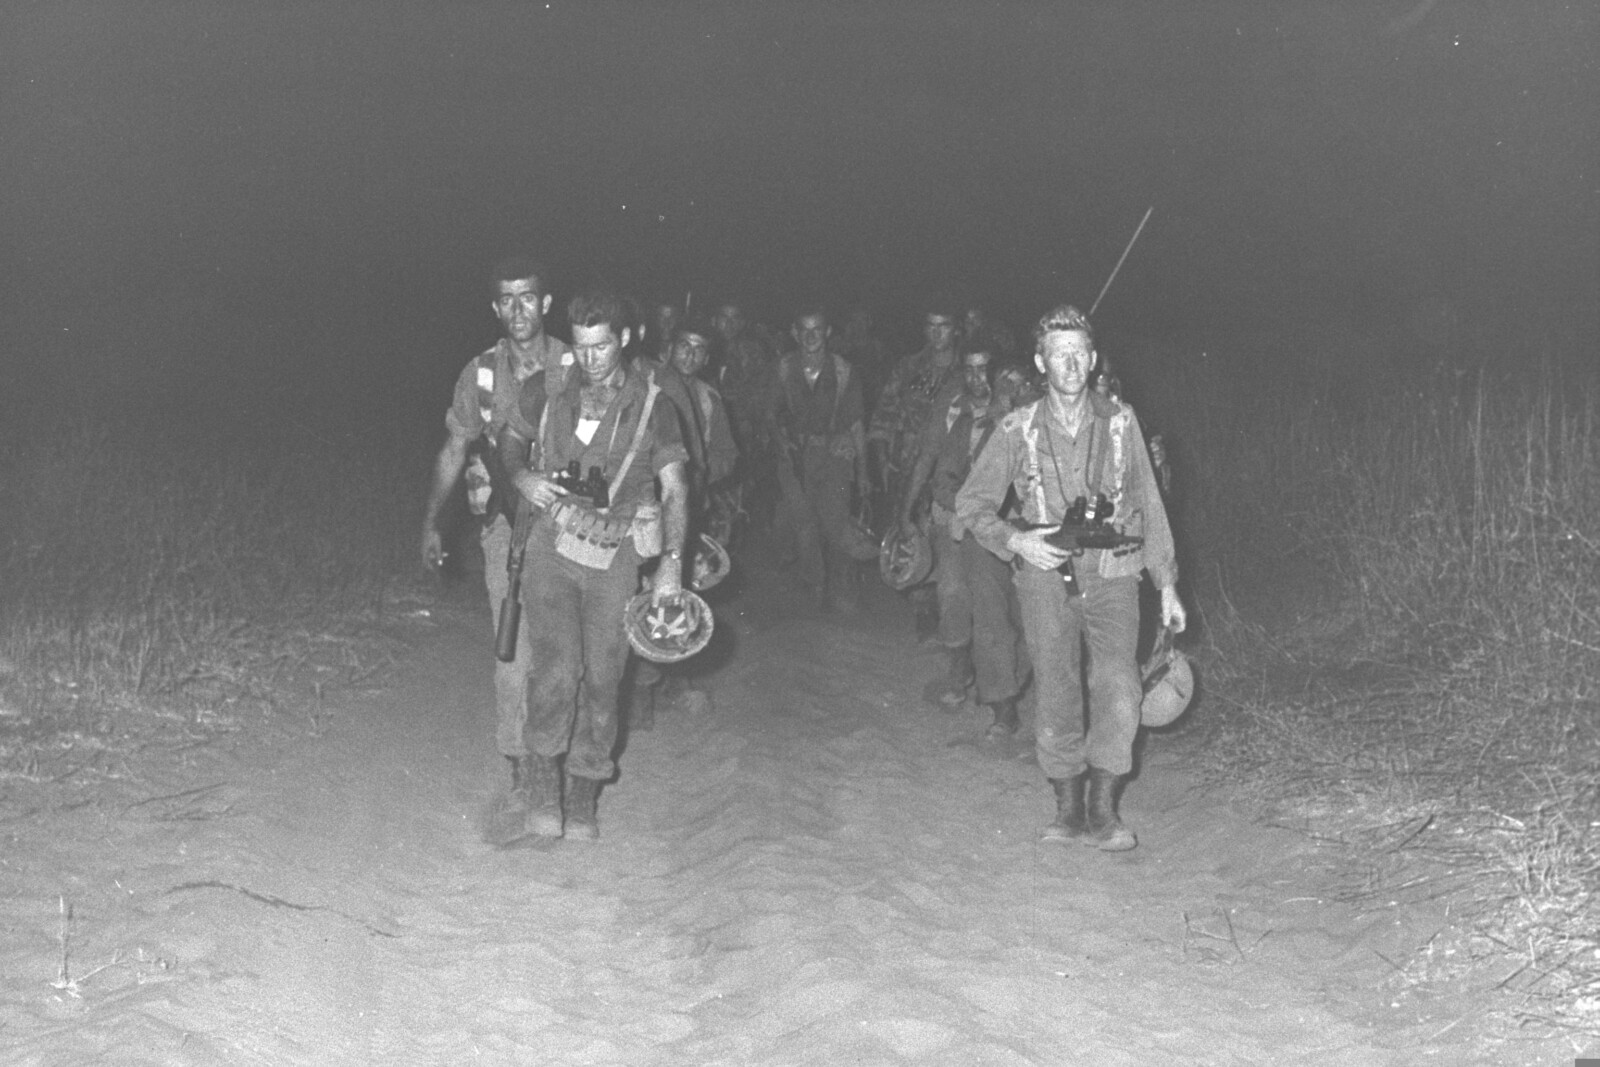 אפרים חירם (מימין) ודן שומרון (משמאל) בפעולת לילה של הצנחנים ליד קלקיליה (צילום: אוסף התצלומים הלאומי)